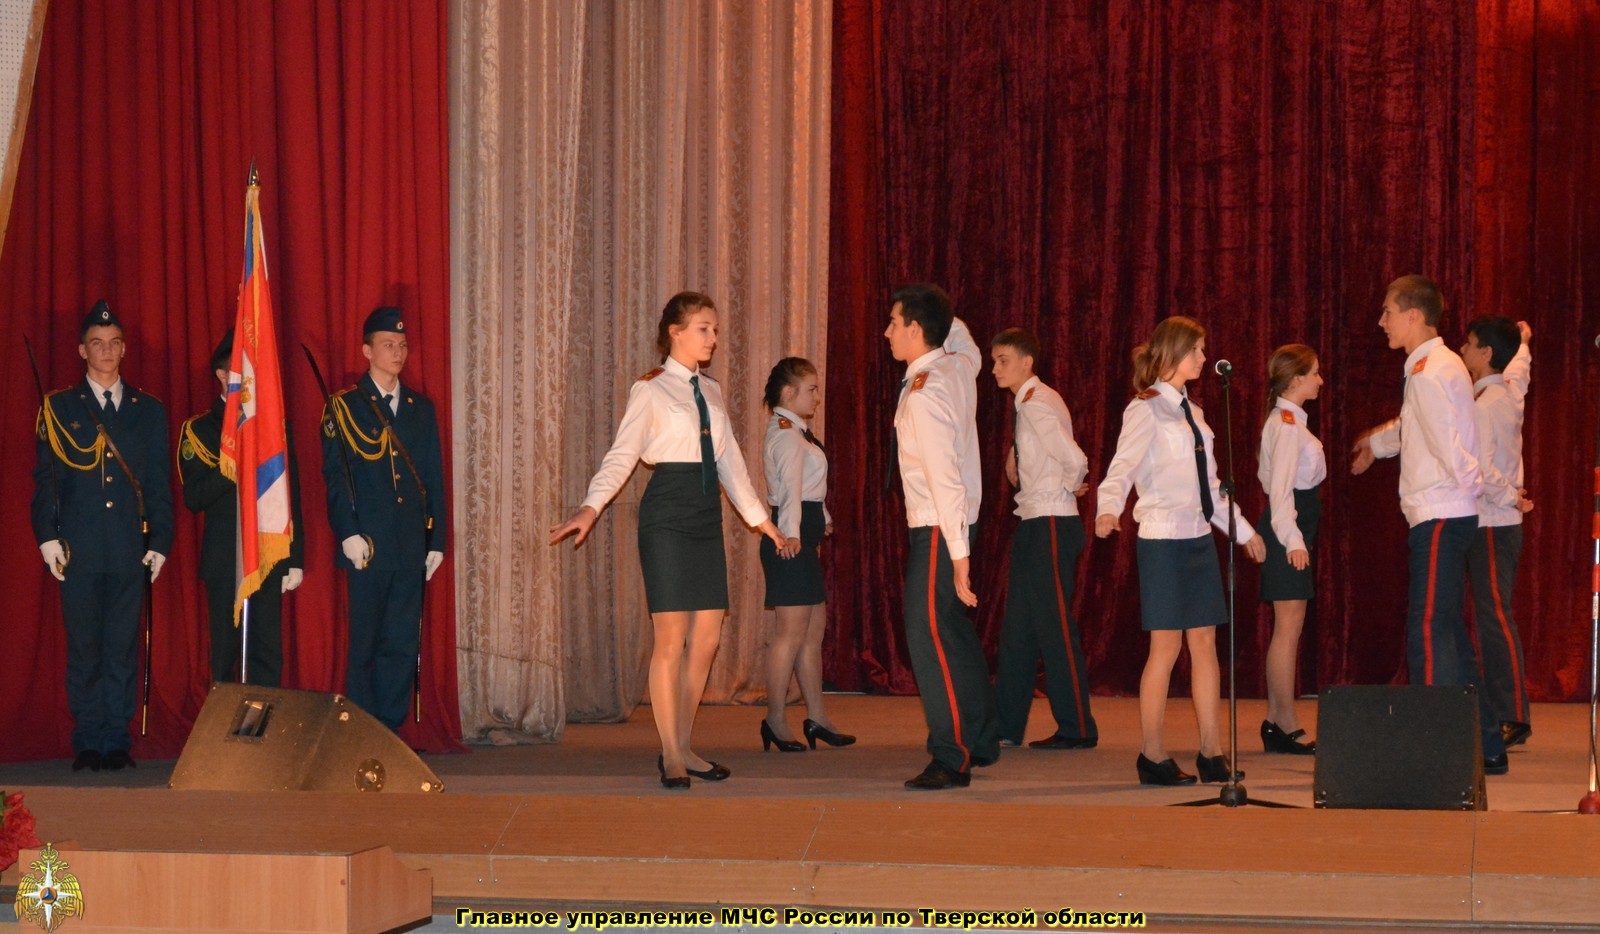 В Твери состоялось торжественное мероприятие, посвященное юбилею Кадетской роты имени Михаила Тверского